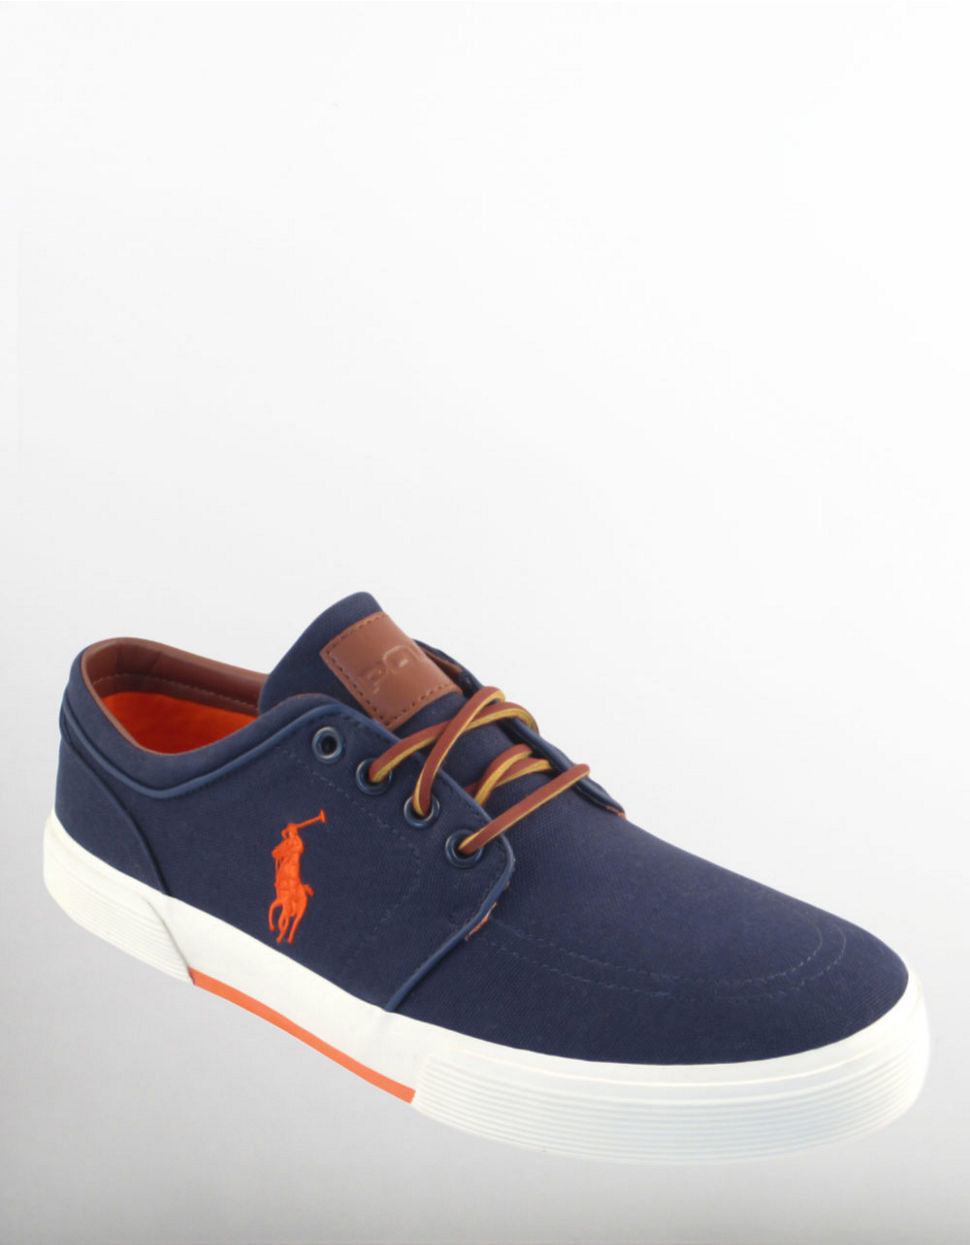 Lyst - Polo Ralph Lauren Faxon Sneakers in Blue for Men